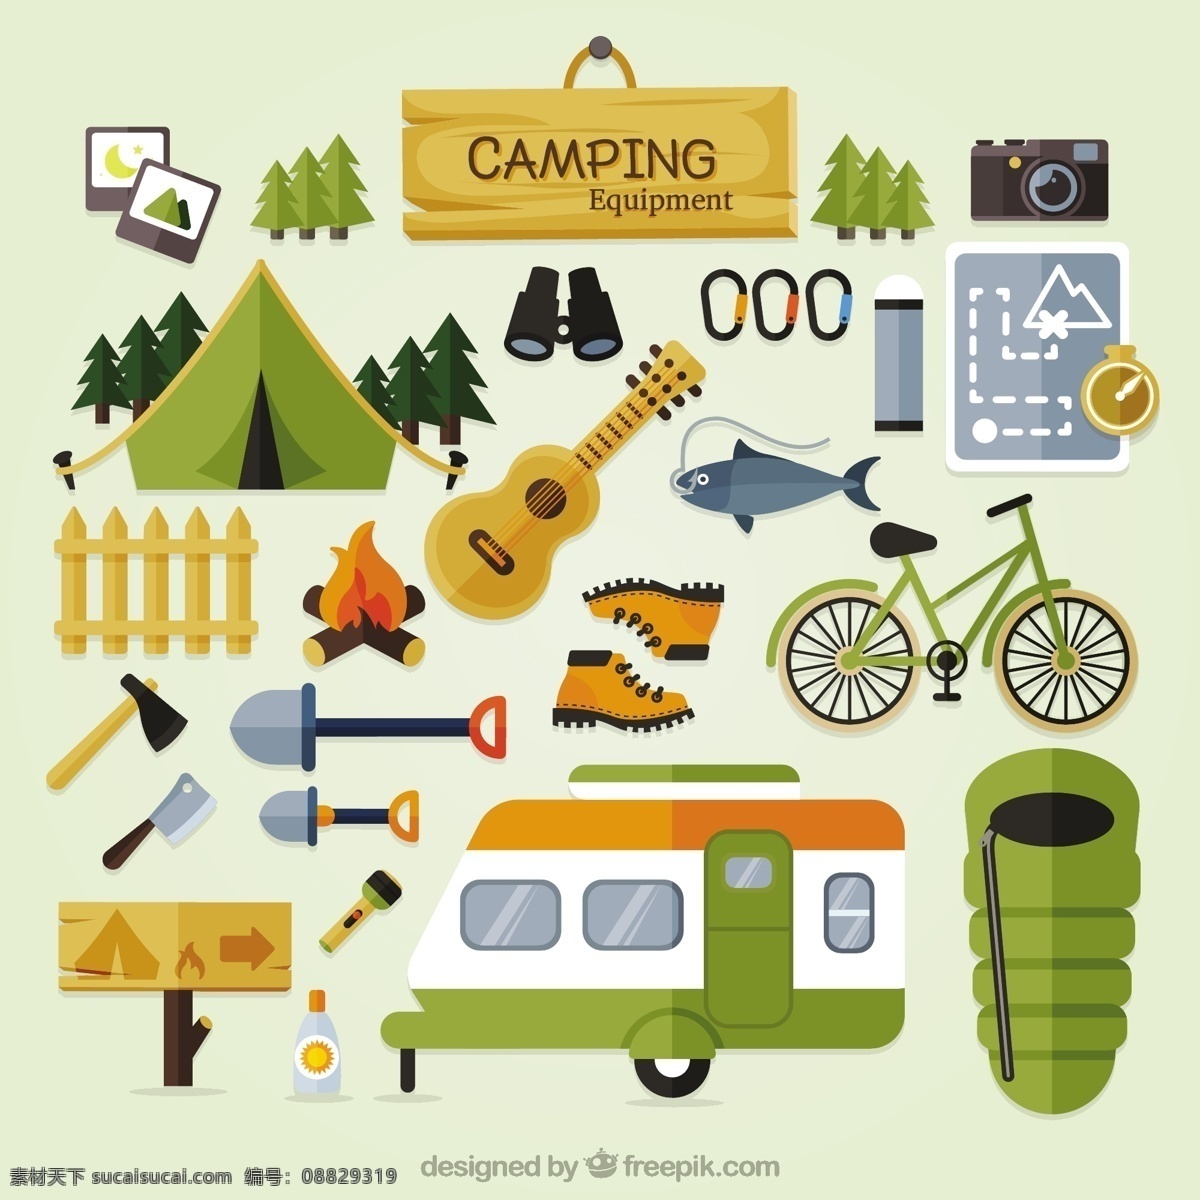 平面设计 中 可爱 露营 设备 相机 地图 鱼 自然 山区 自行车 吉他 平坦 森林 体育 标志 徽章 山 营地 探险 白色